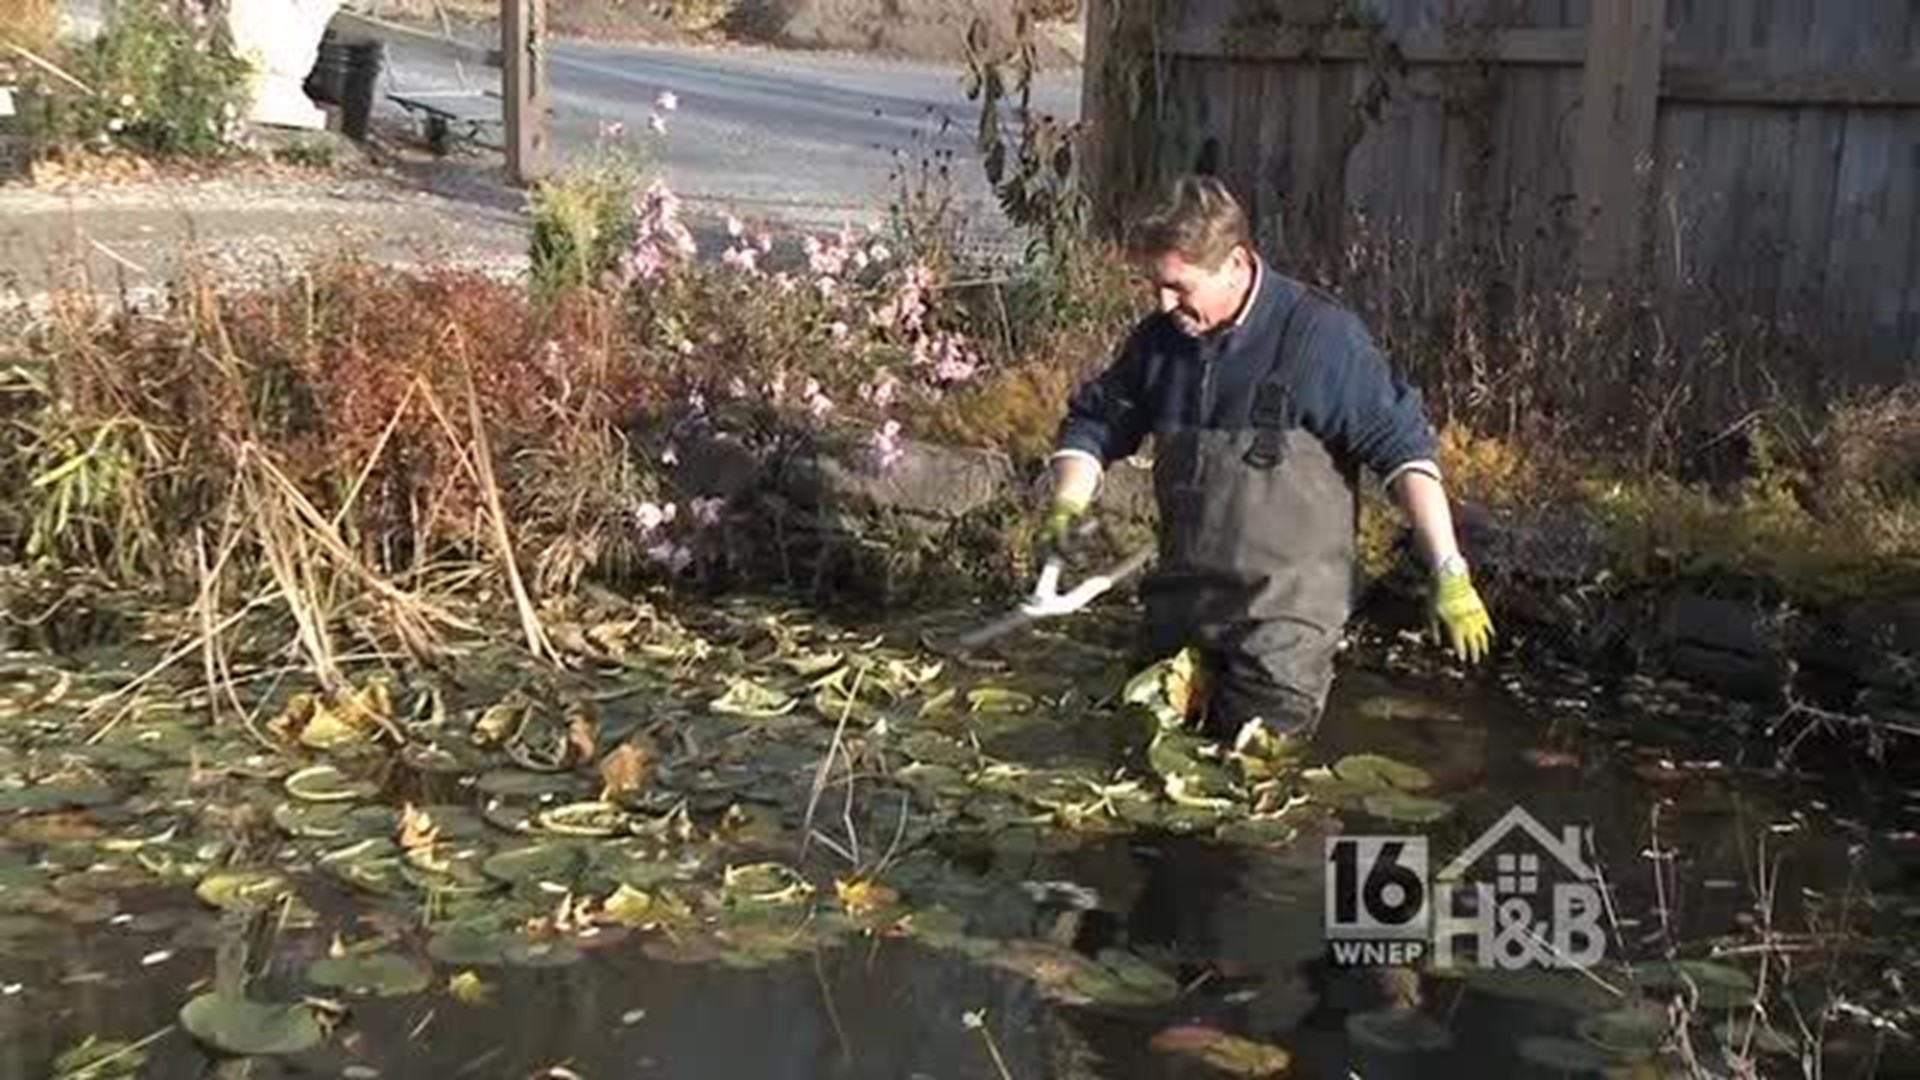 Fall Garden Clean-up